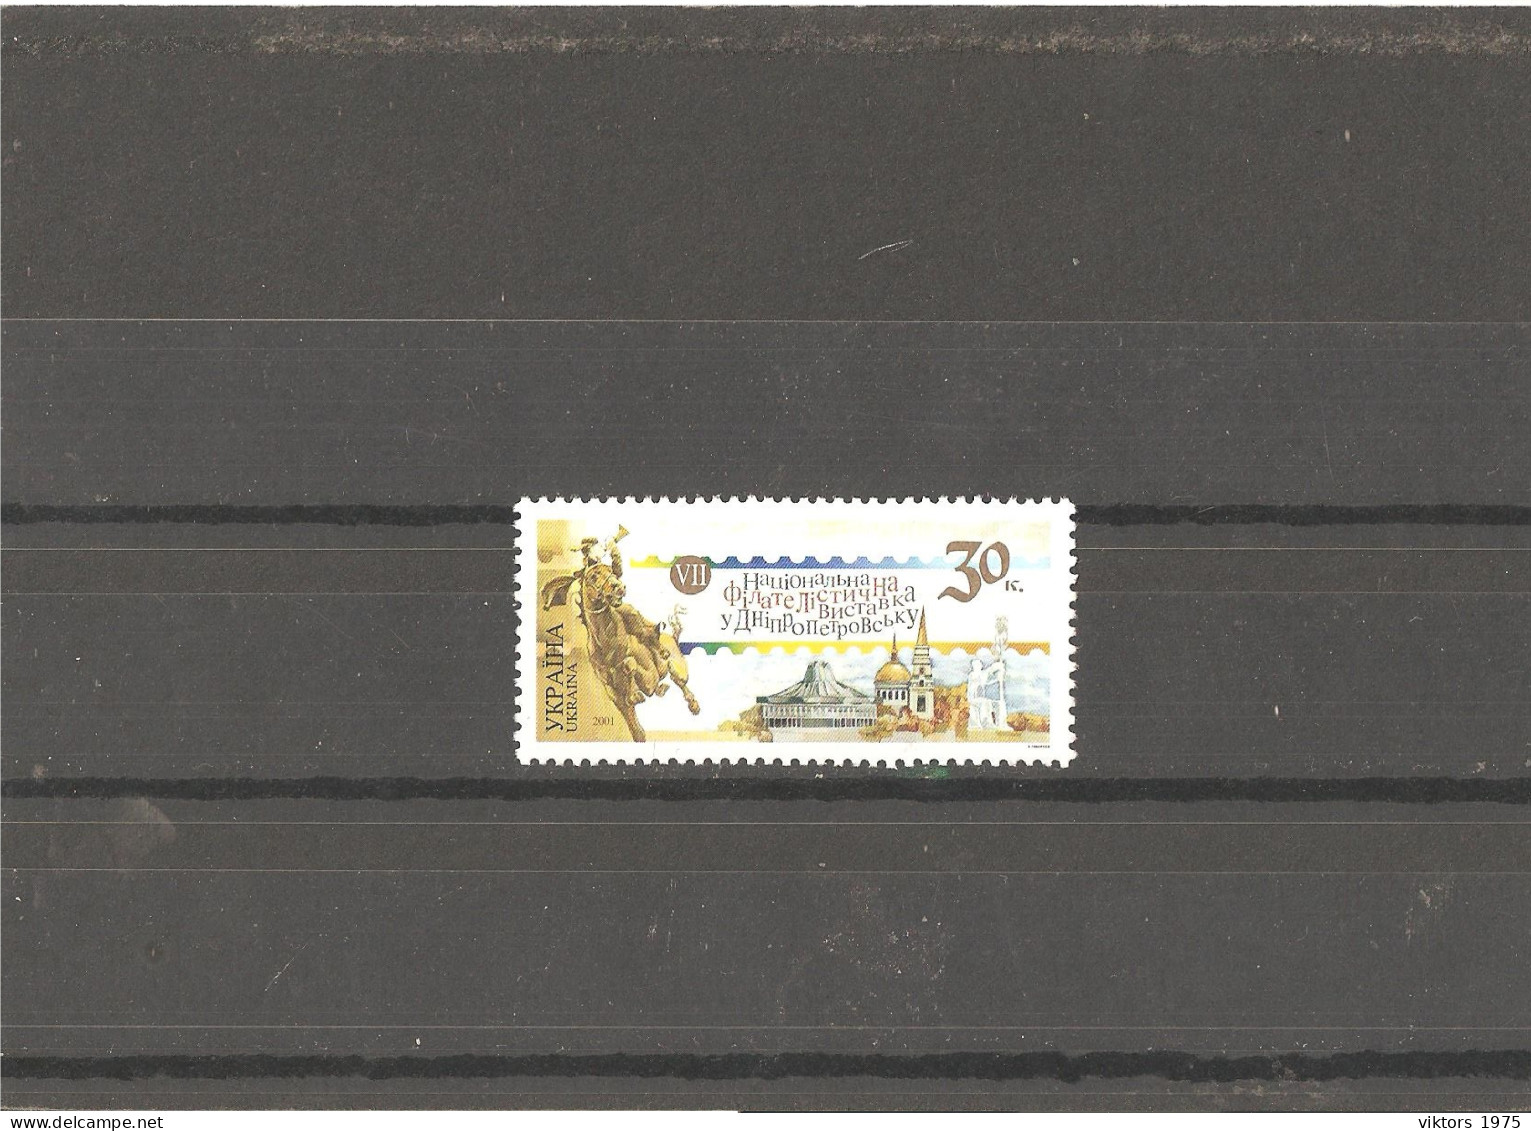 MNH Stamp Nr.467 In MICHEL Catalog - Ukraine